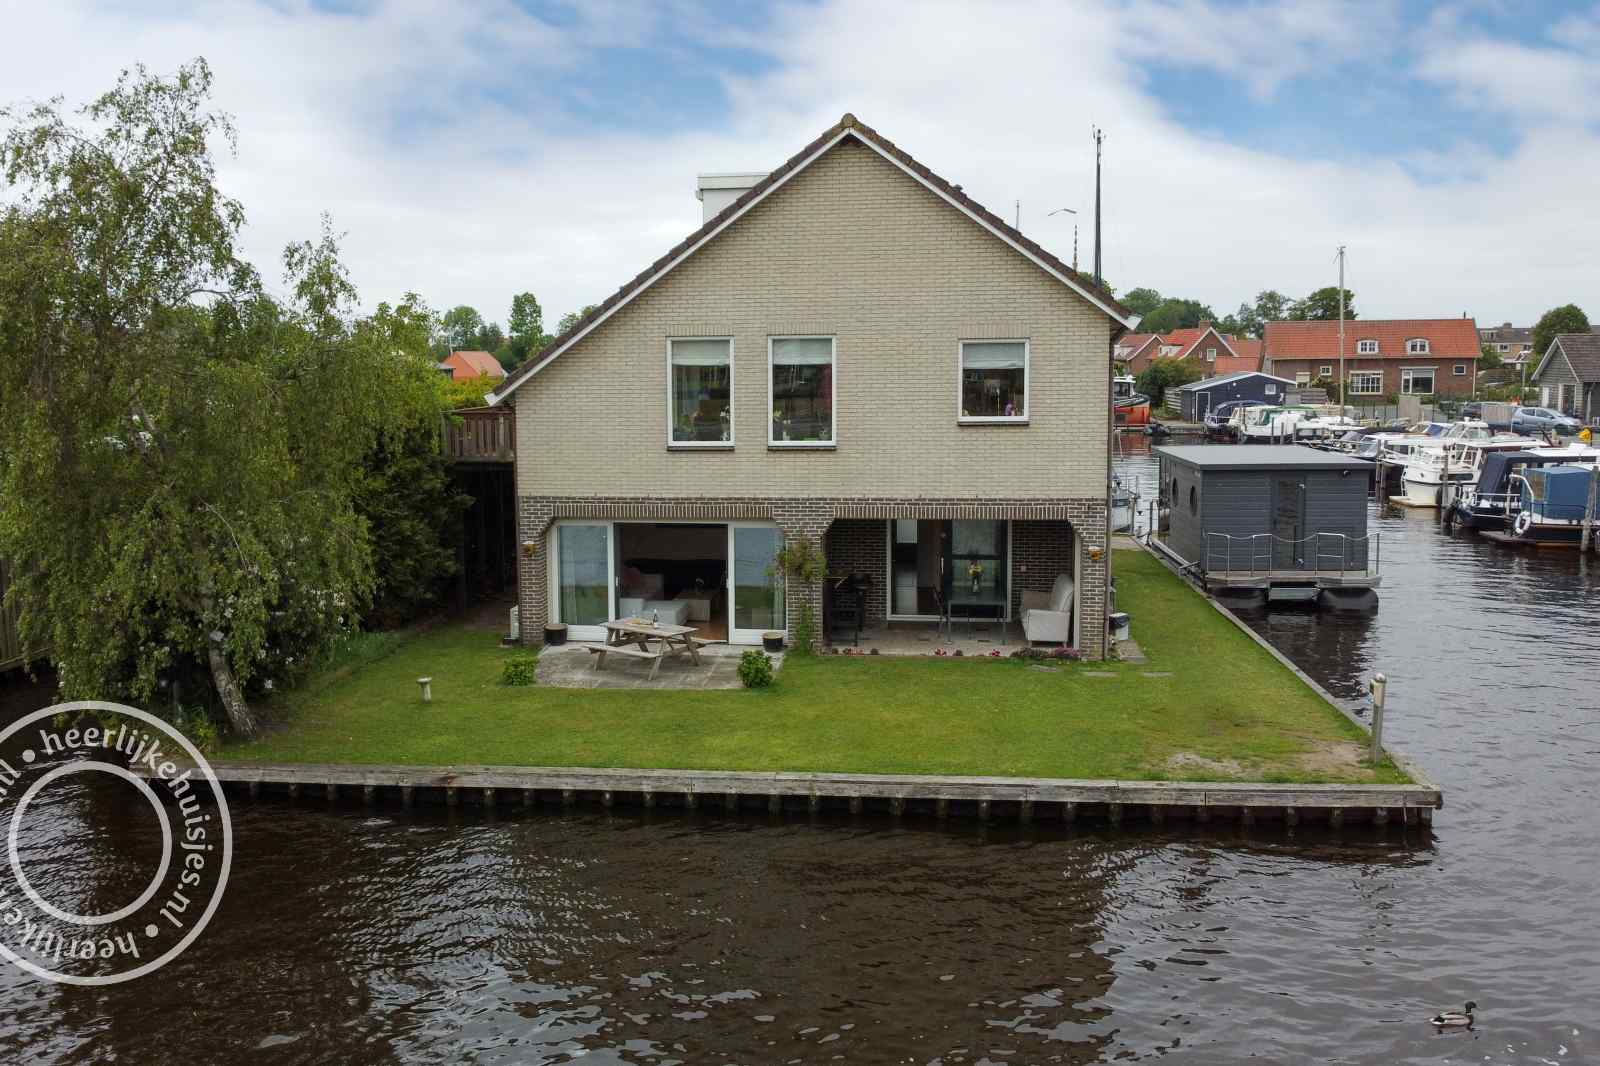 Gezellig vakantiehuis voor 4 personen aan het water in Giethoorn, Overijssel.